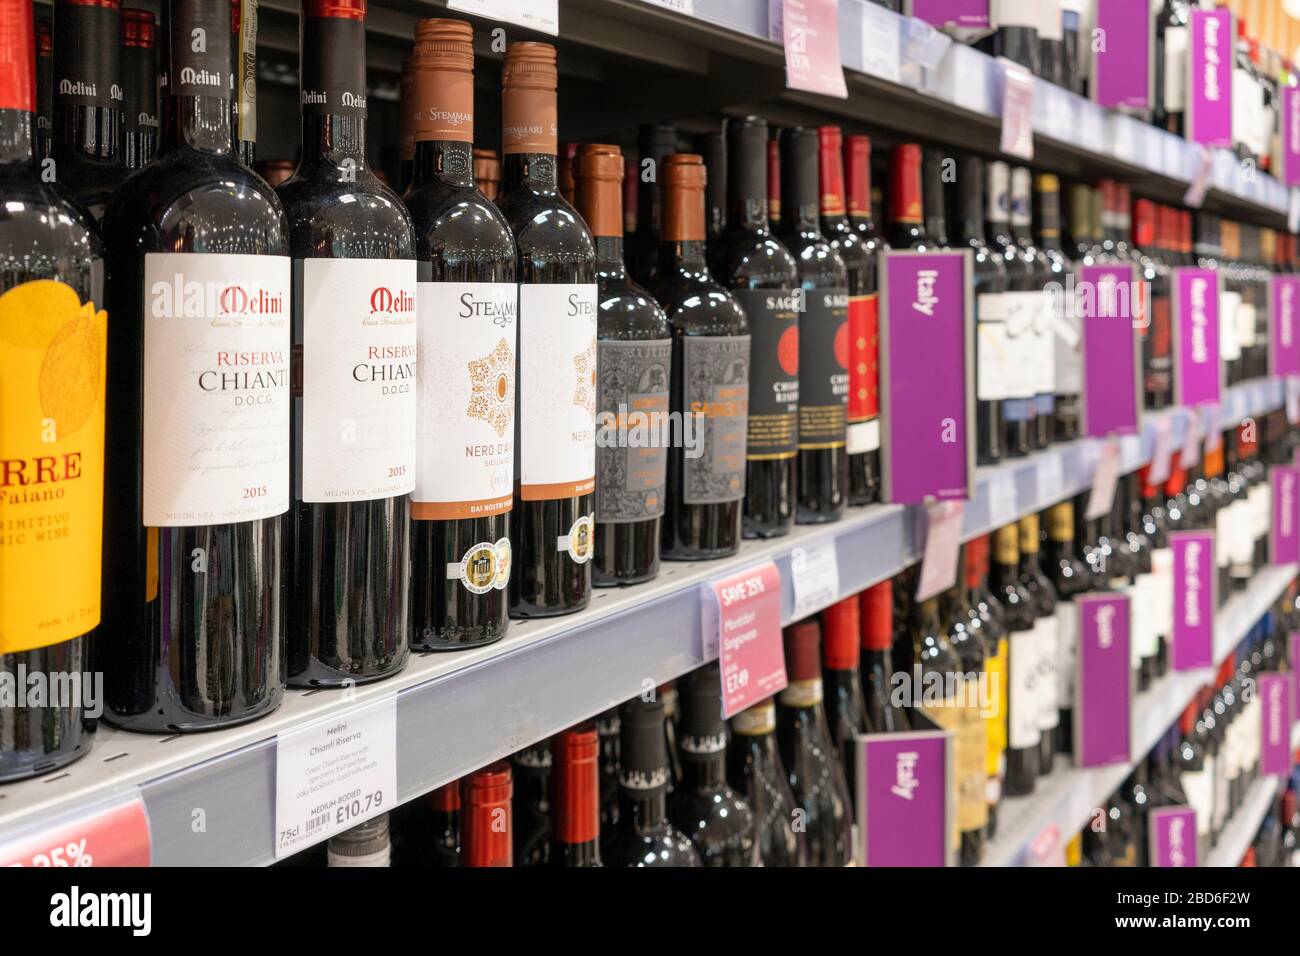 Bouteilles de vin rouge en démonstration sur les étagères à vendre avec des étiquettes de pays d'origine au supermarché Waitrose, Royaume-Uni. Thème - alcool, alcoolisme, toxicomanie Banque D'Images